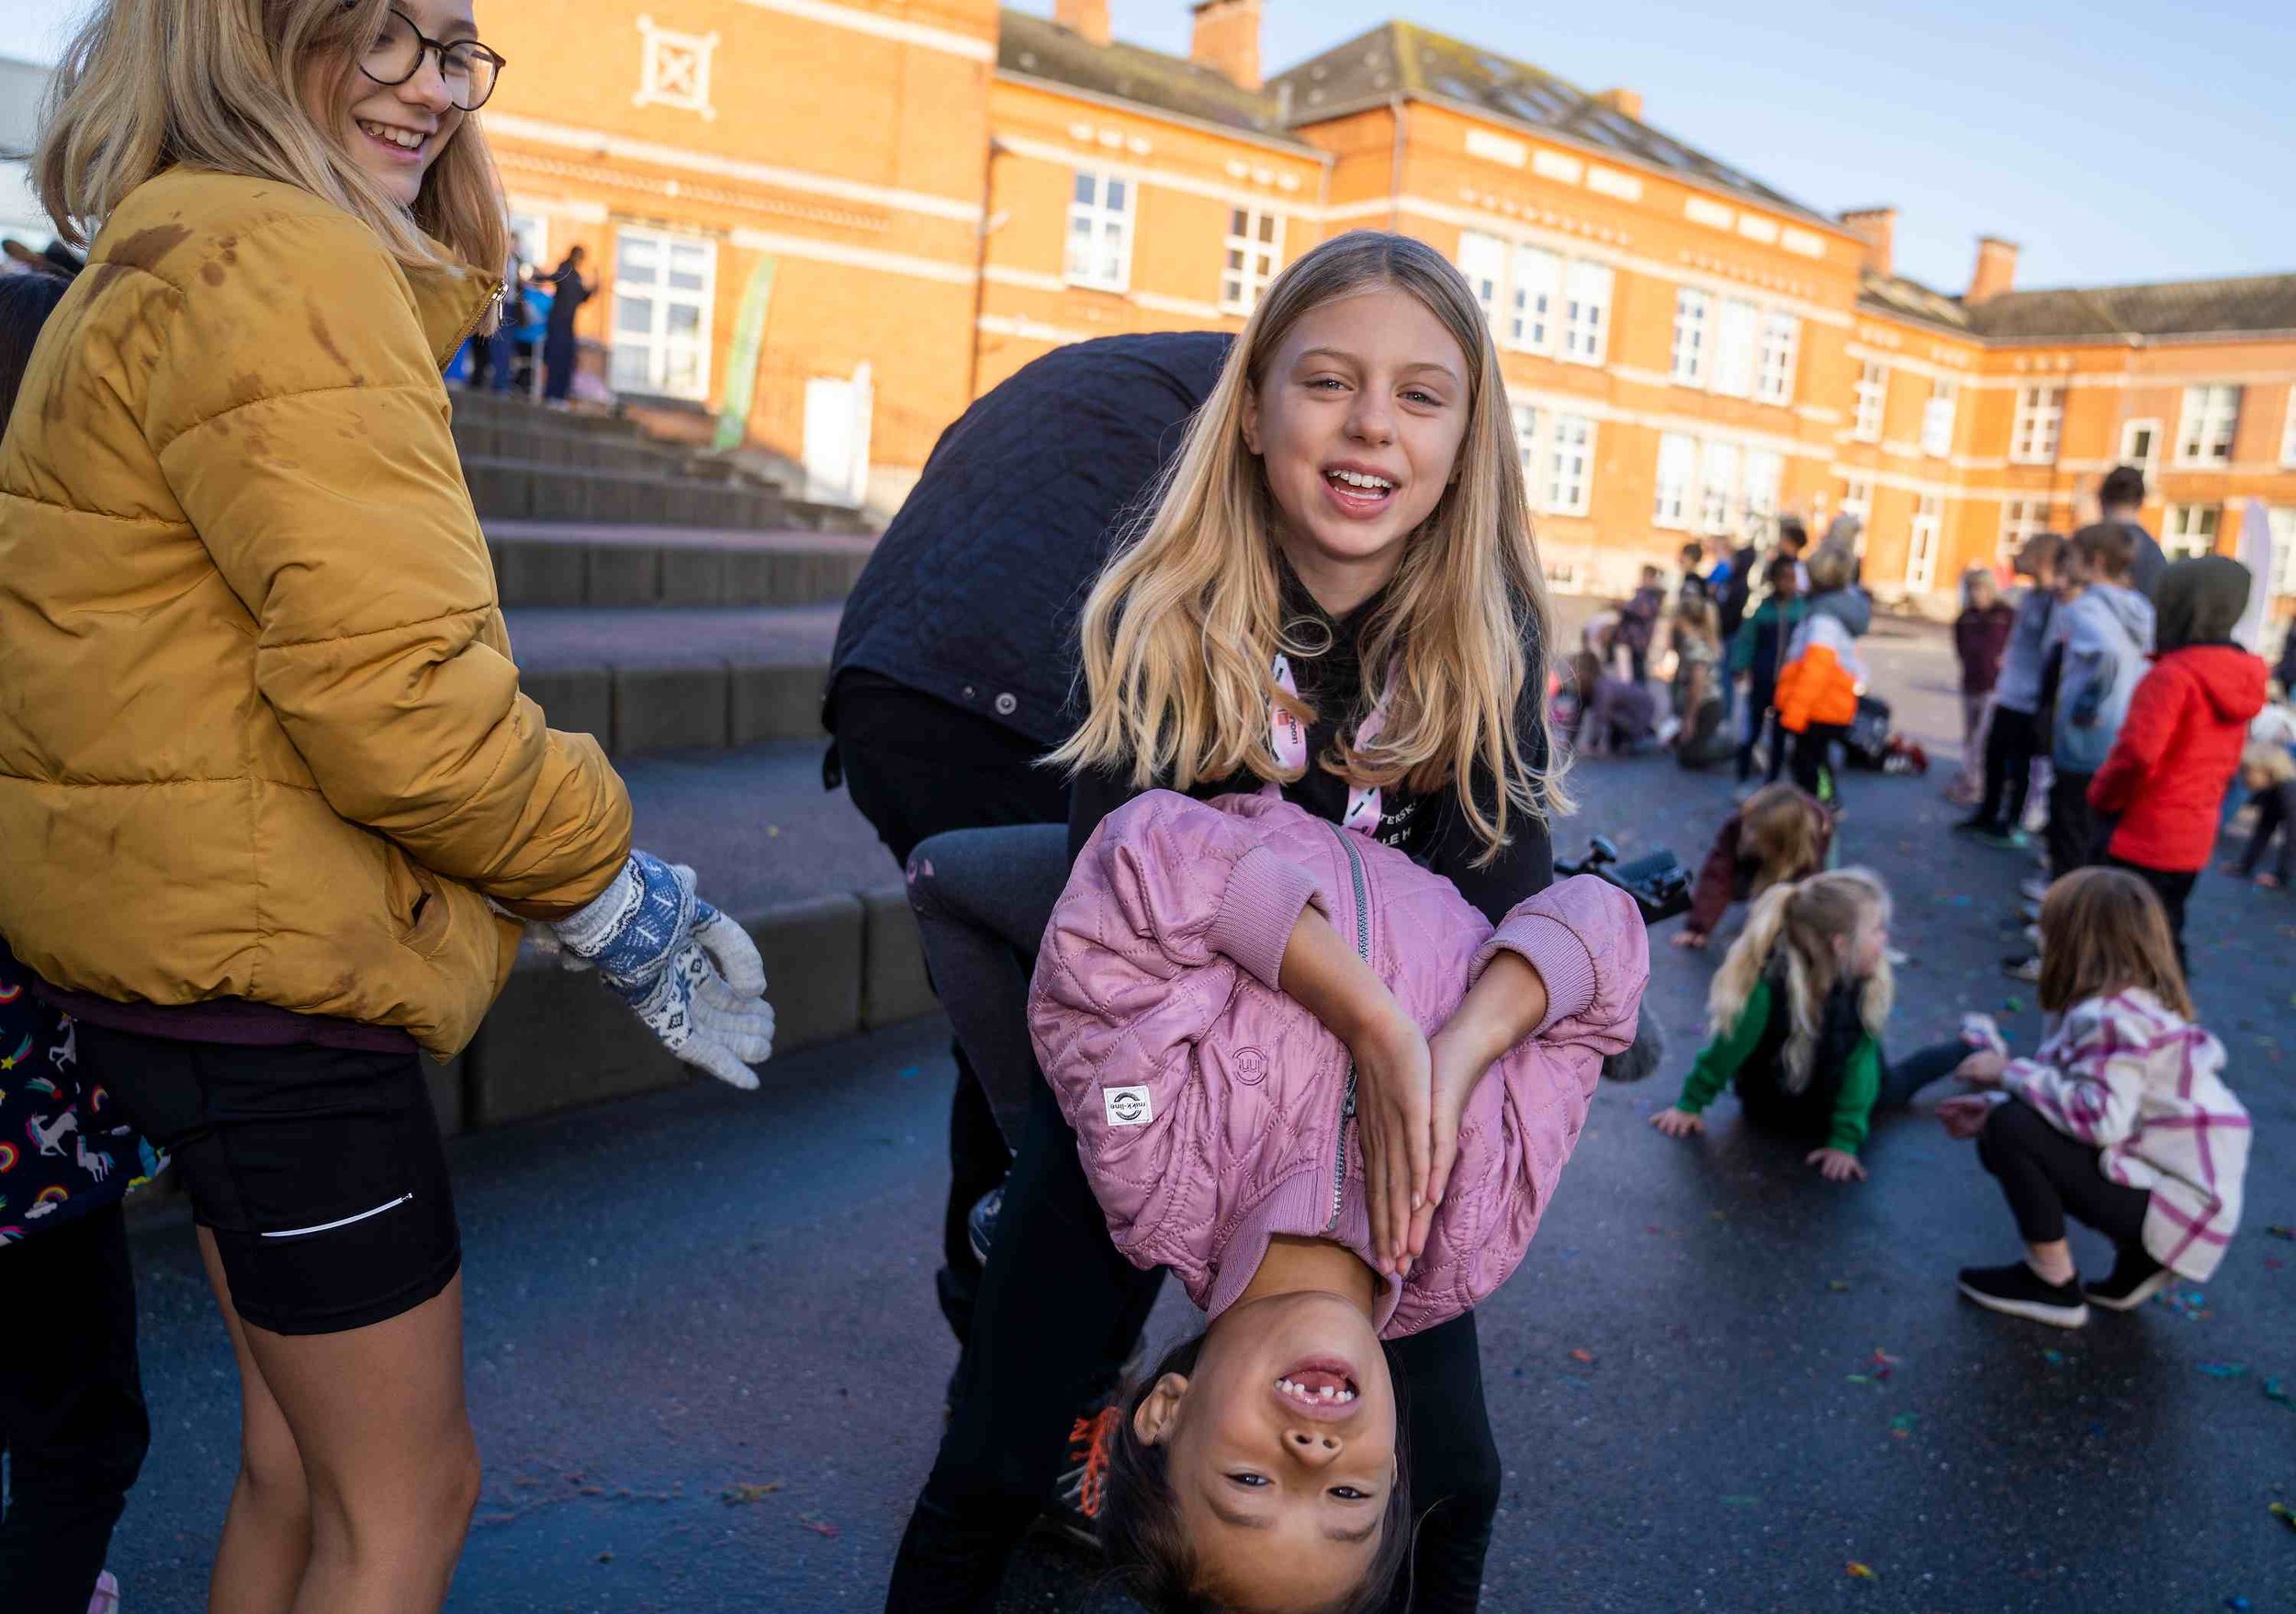   Årets åbningsevent for Skolernes Motionsdag fandt sted på Birkhovedskolen i Nyborg. Dagen blev skudt i gang med konfettikanoner og opvarmningsdans, og eleverne var herefter igennem fire årtiers motionstendenser, inden en finale med faldskærmsudspri